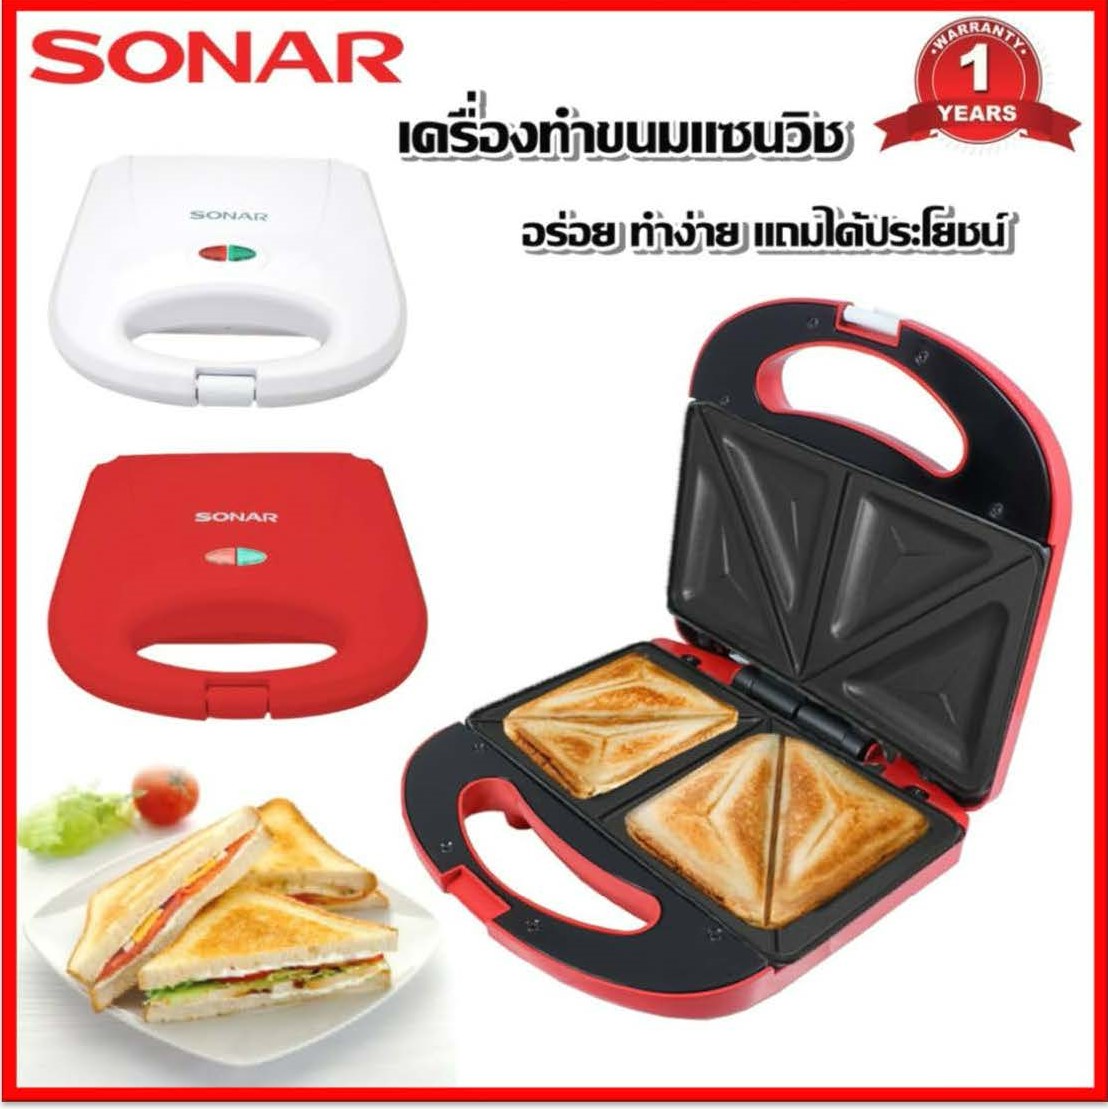 SONAR เครื่องทำแซนด์วิช อุปกรณ์ทำขนม เครื่องทำแซนวิช เครื่องทำขนมแซนวิช เครื่องทำอาหารเช้า รุ่น SM-S02 มี 2 สี แดง/ ขาว